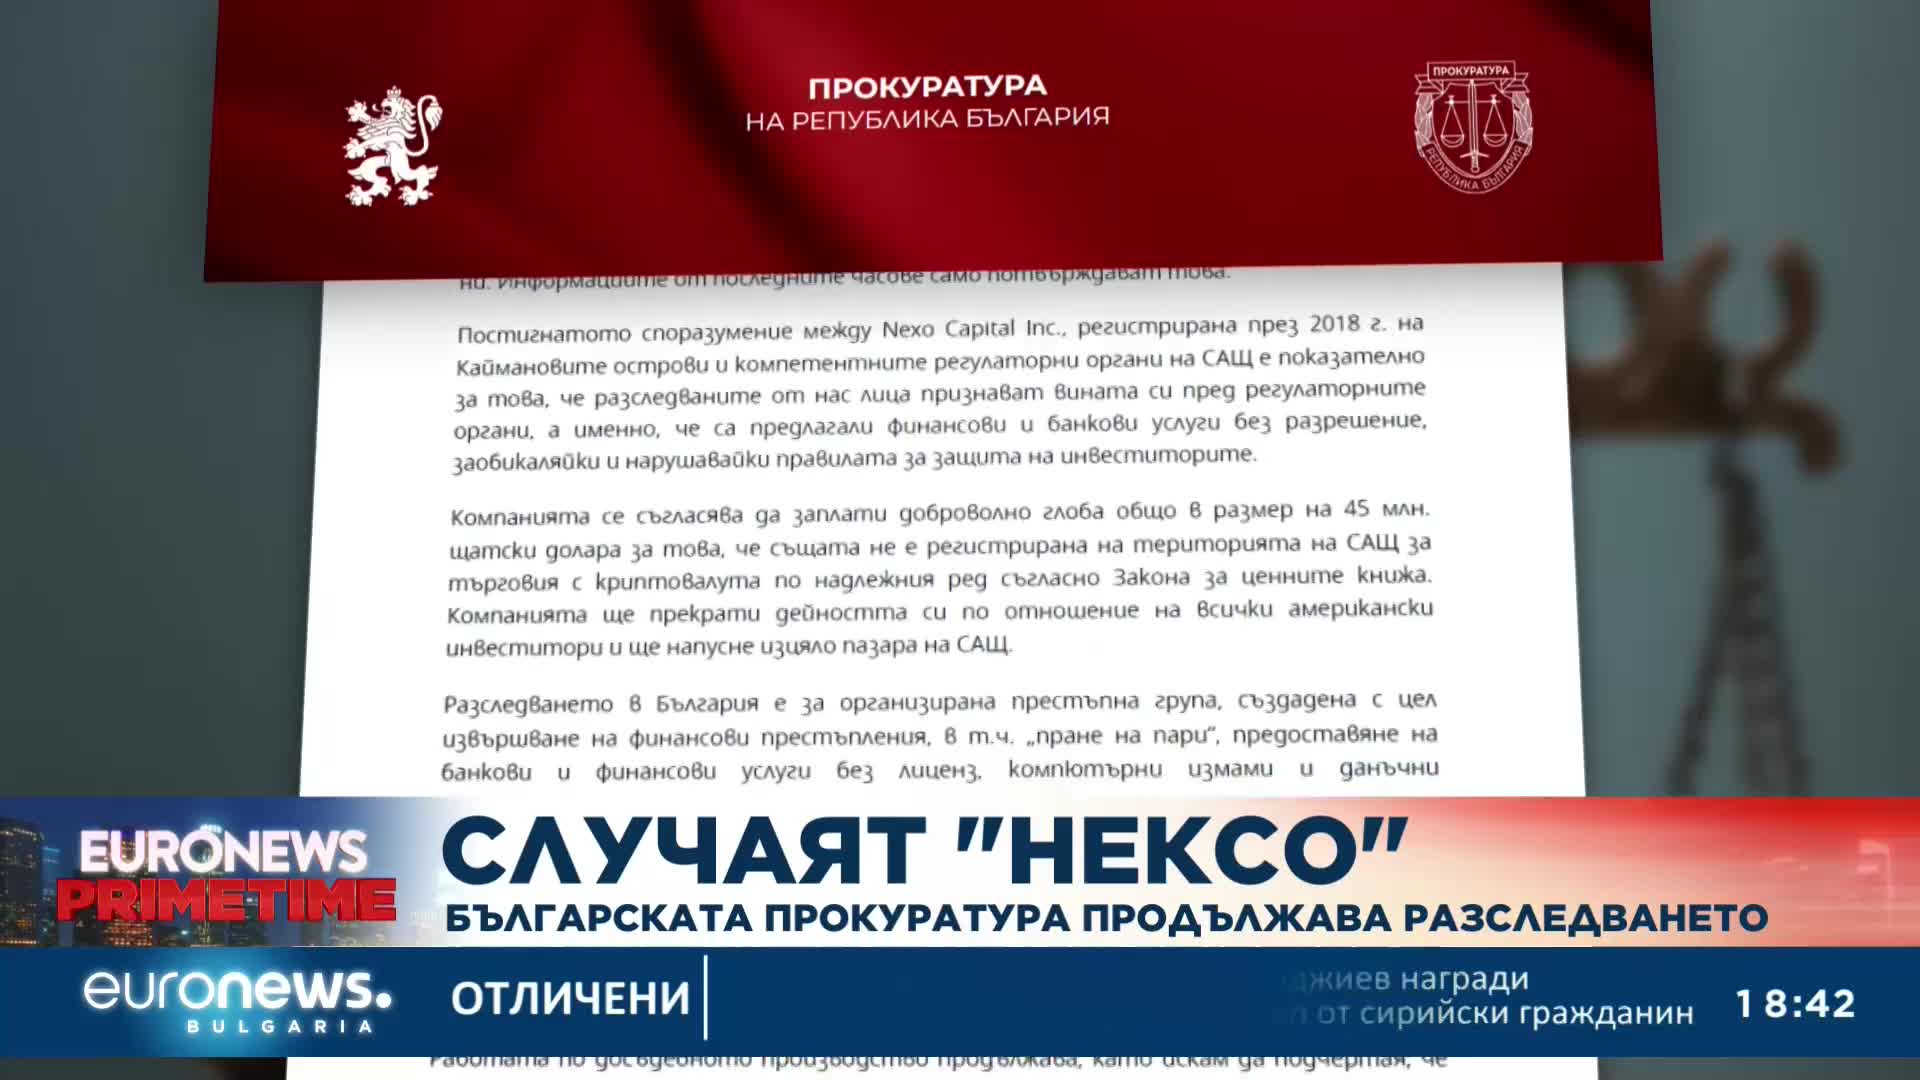 Българската прокуратура продължава разследването на случая "Nexo"